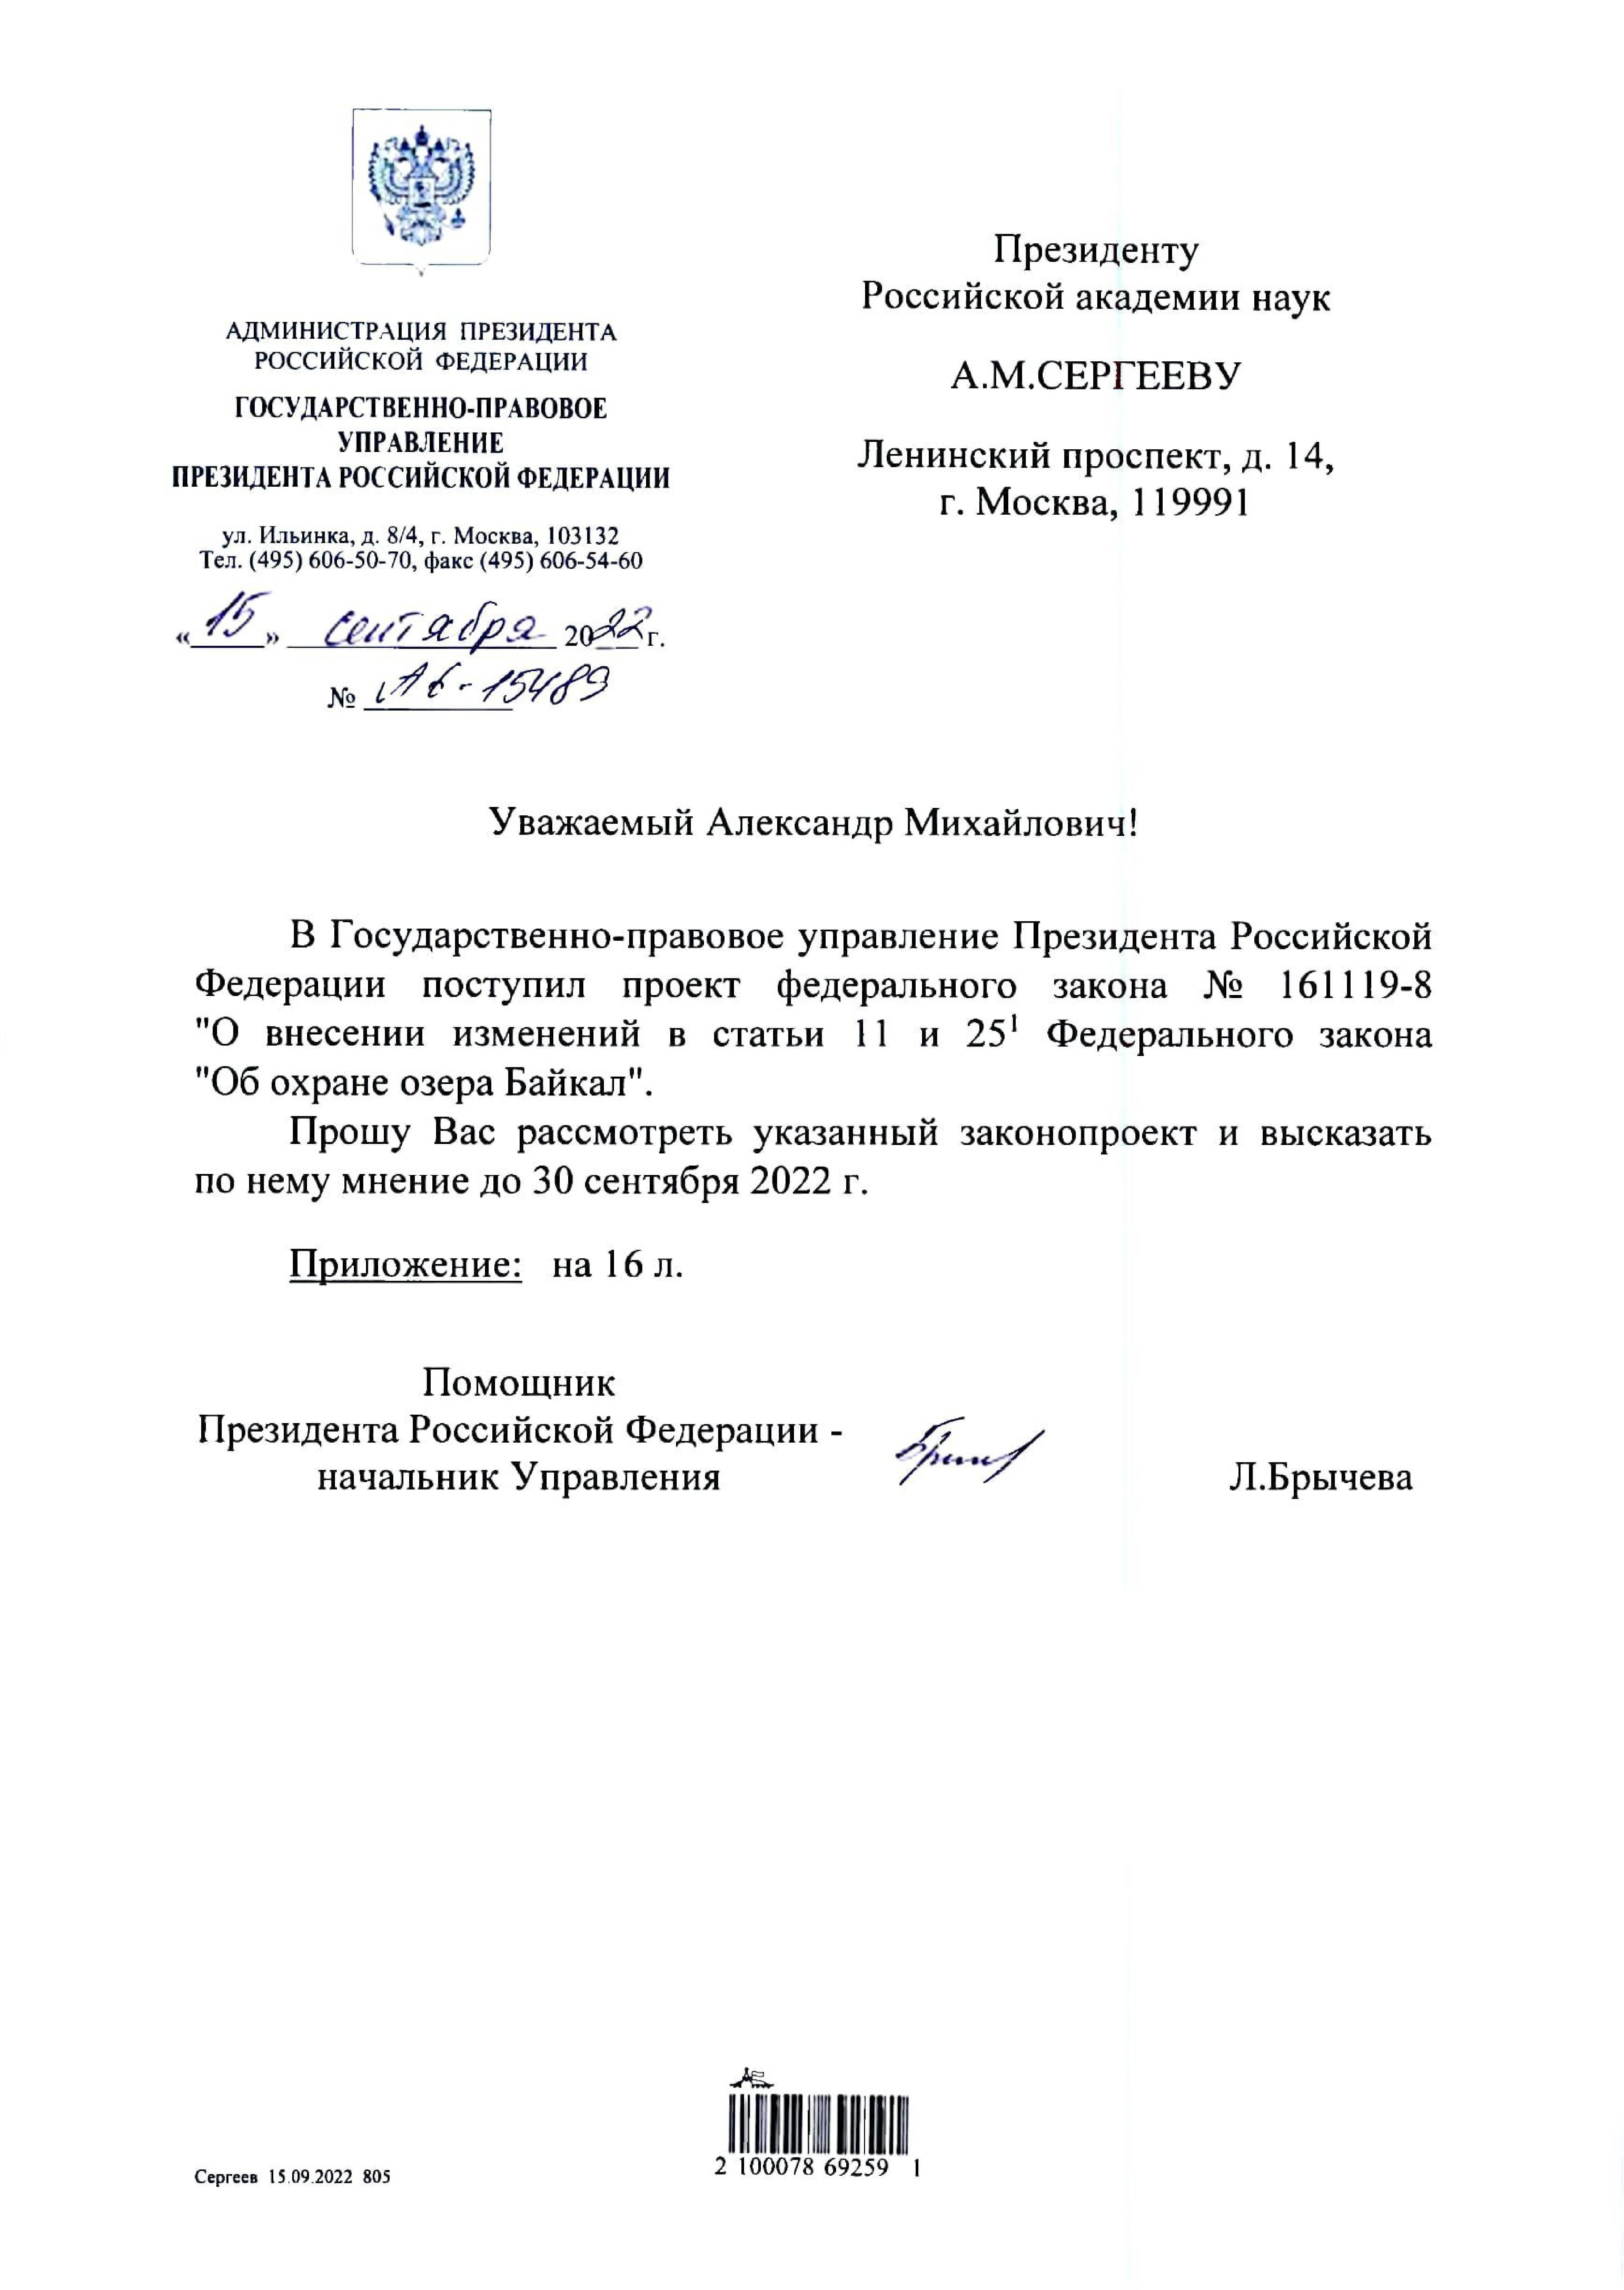 В редакцию поступили новые предложения к документам по охране озера Байкал - фото 2